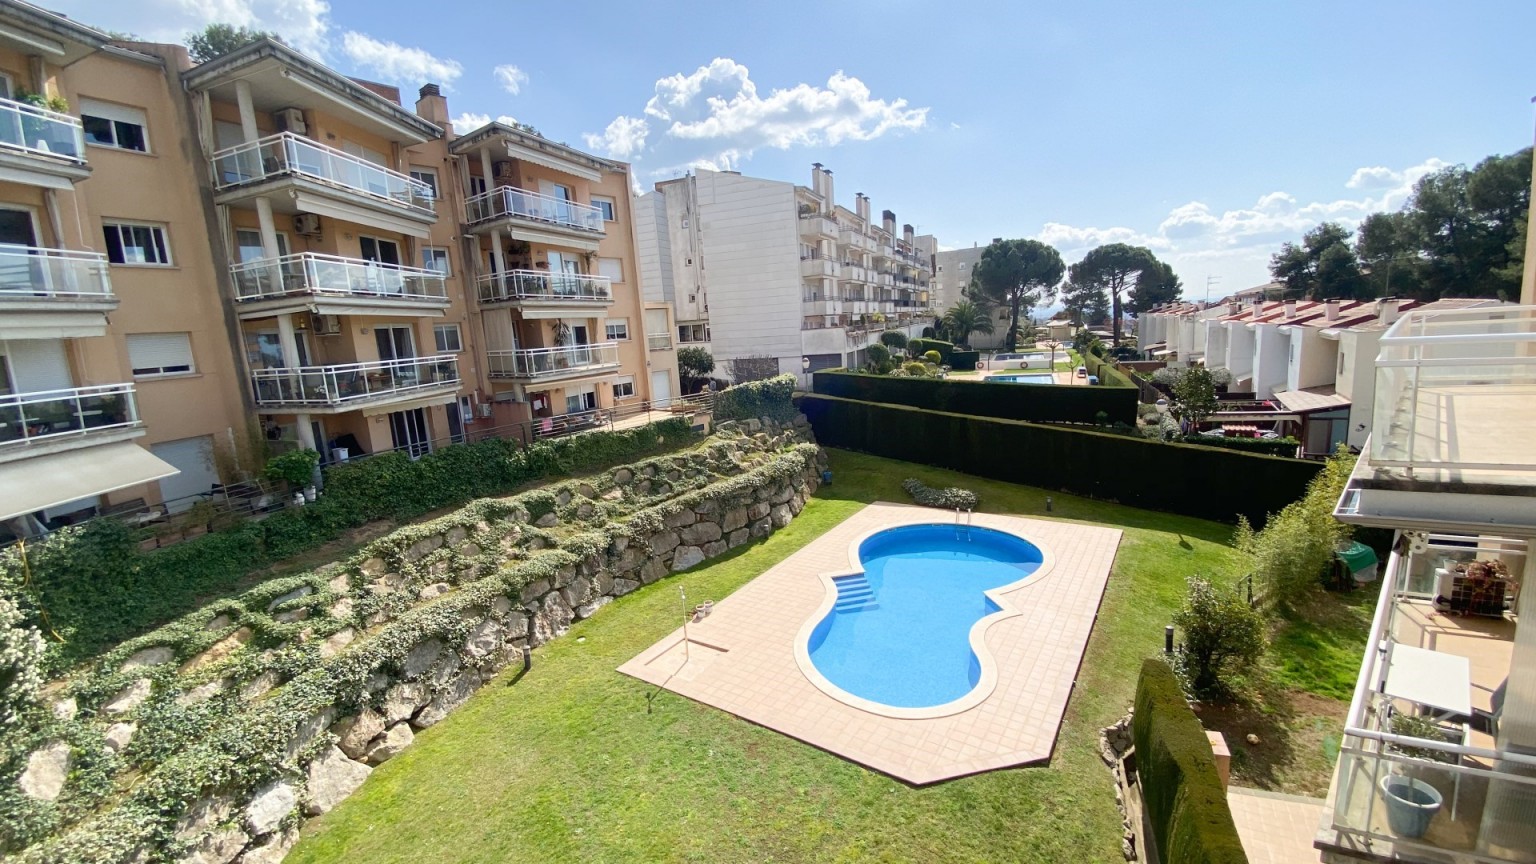 Piso planta baja con amplio jardín y zona comunitaria con piscina en la zona de Montjuïc